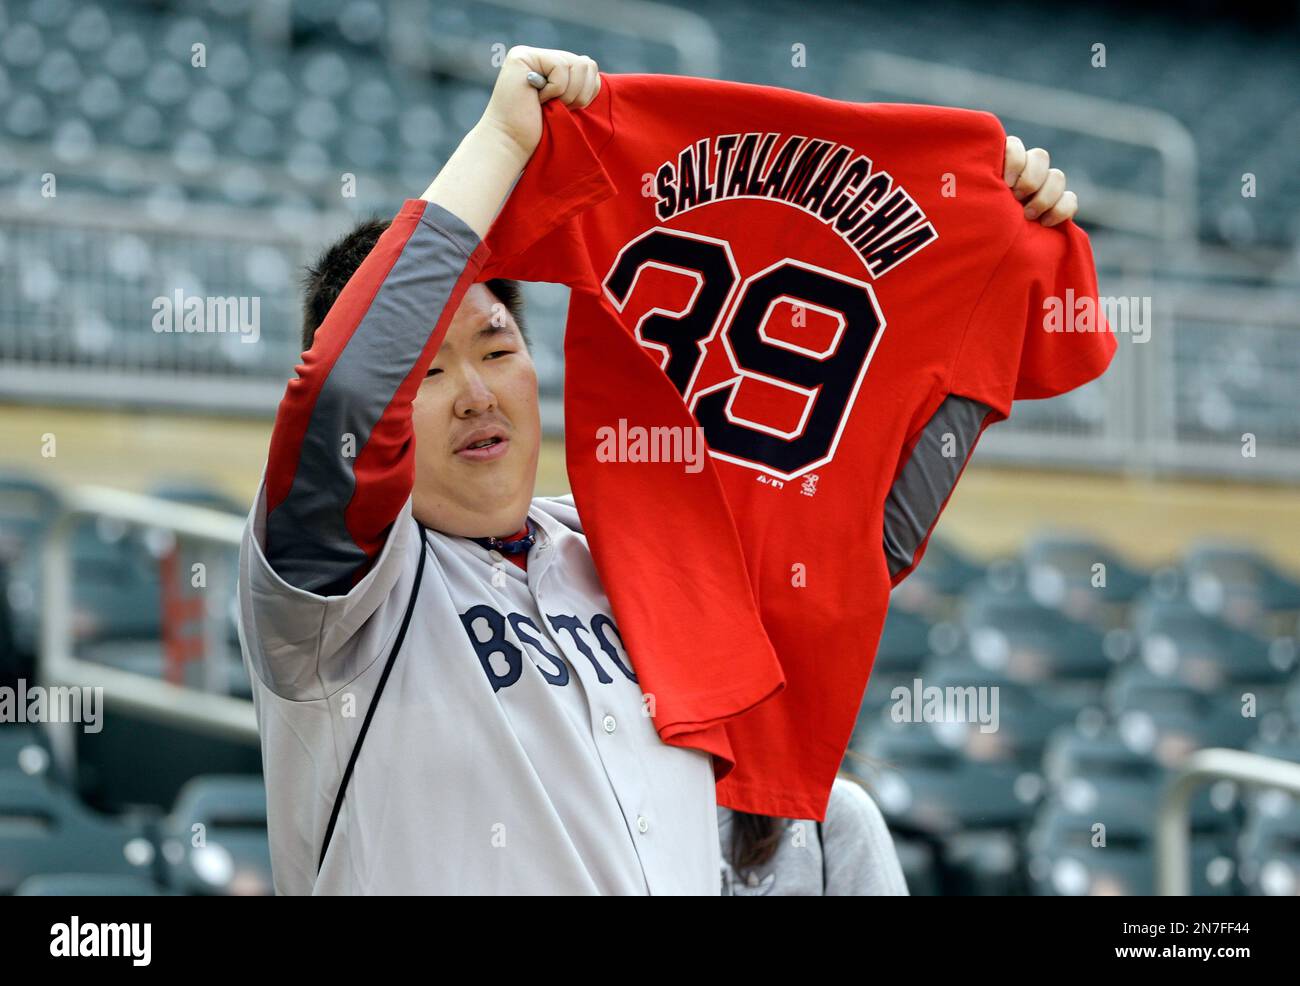 A Boston Red Sox fan waves a Jarrod Saltalamacchia jersey before